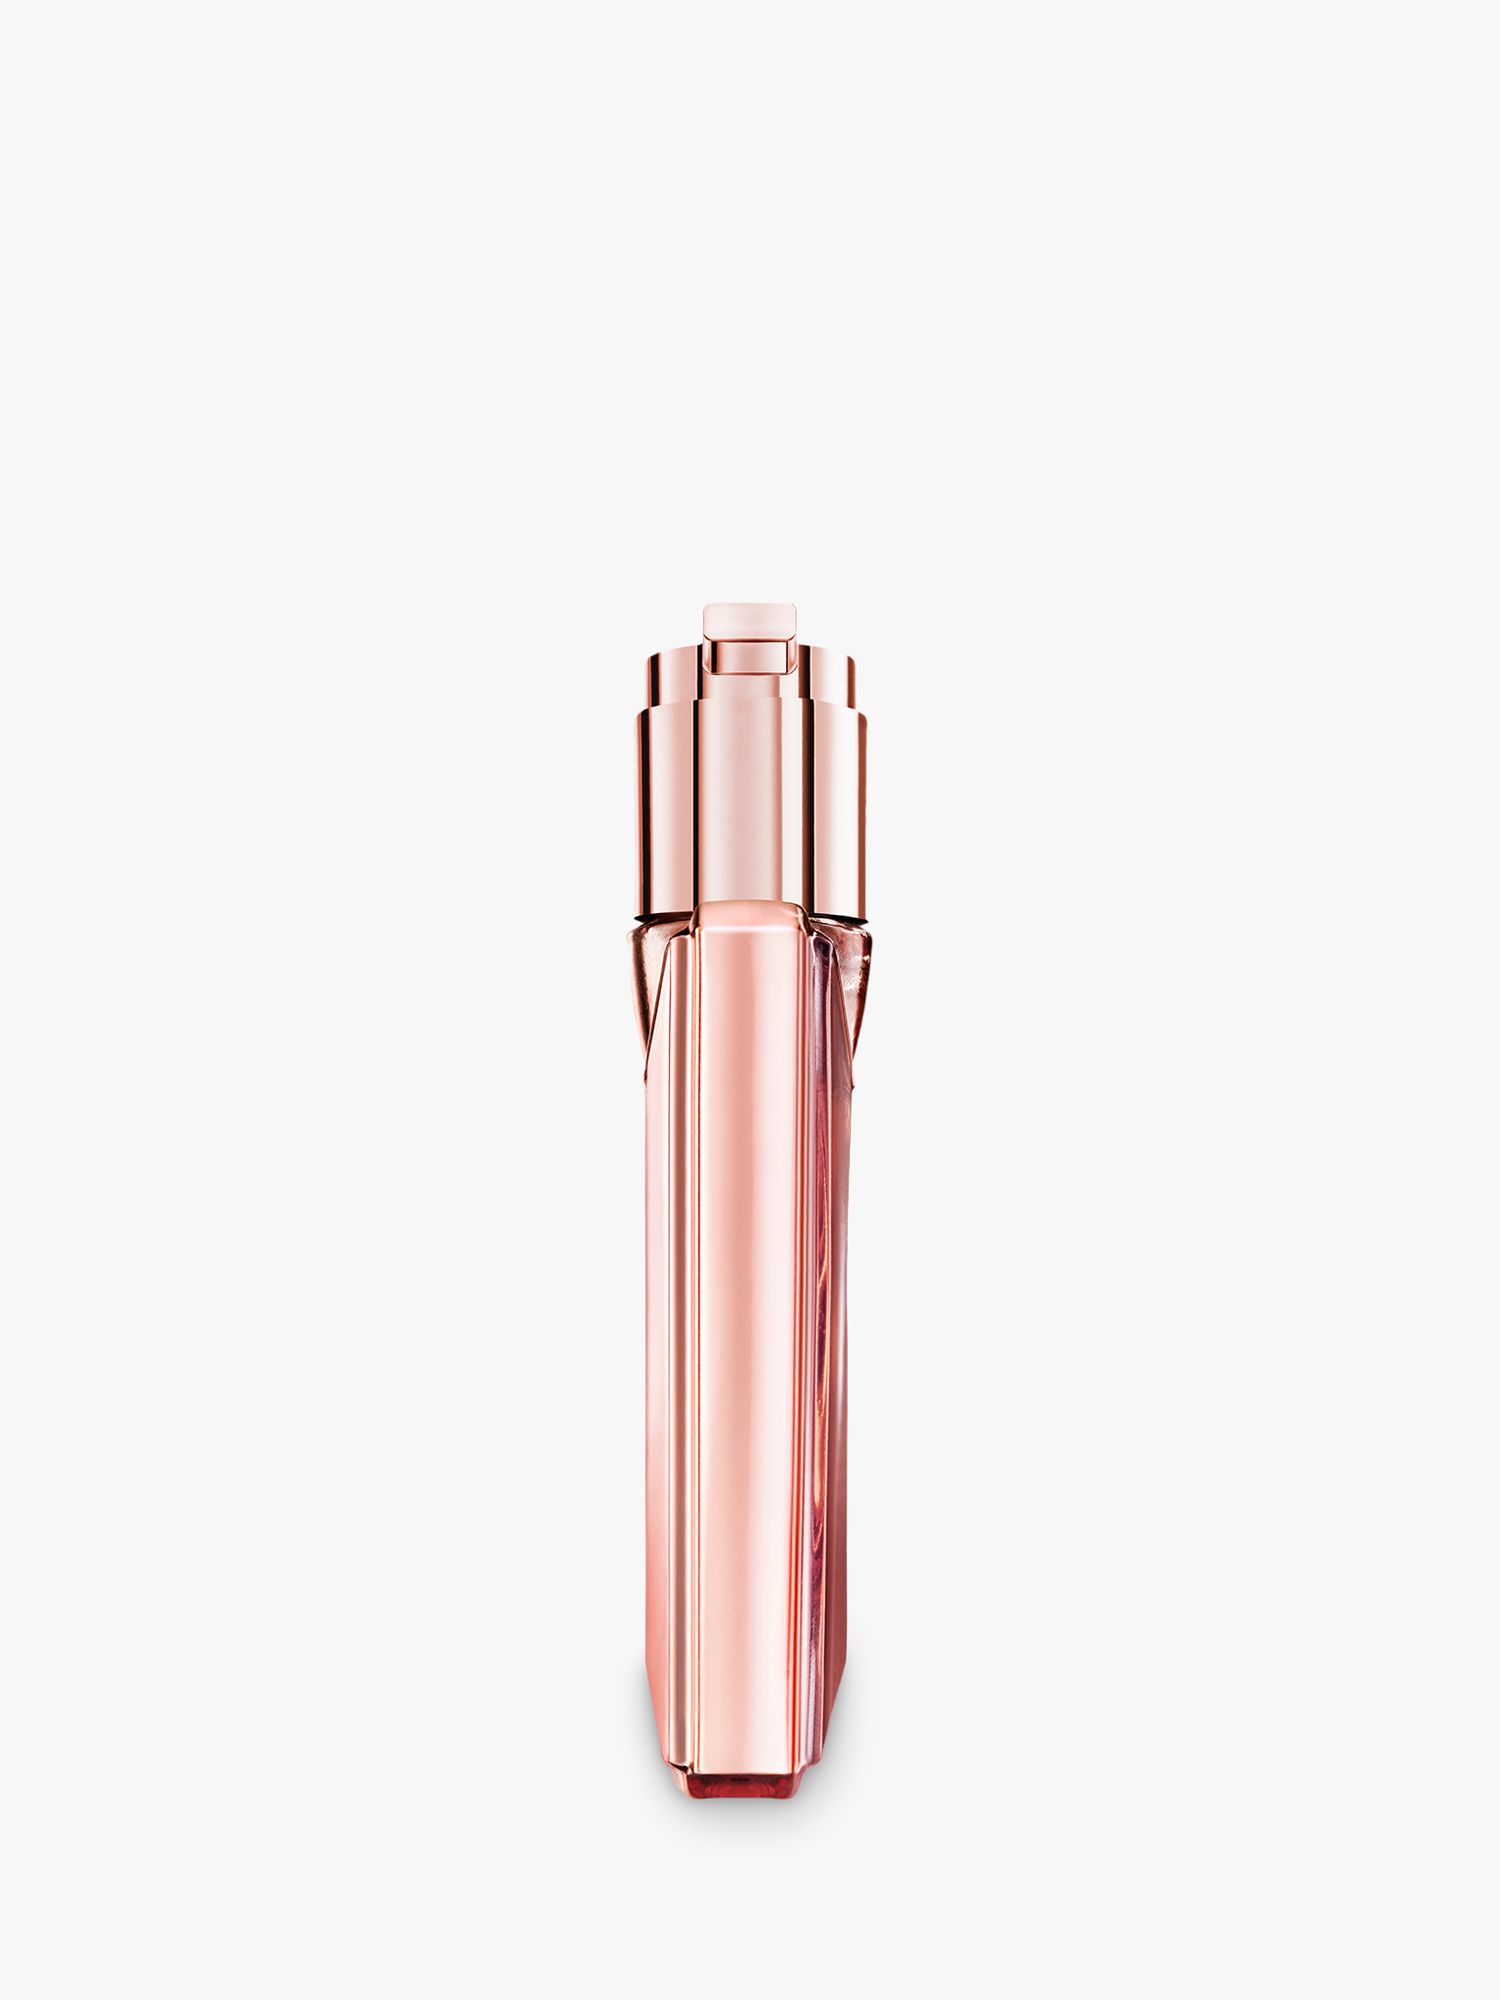 CHANEL Coco Noir Parfum Bottle, 15ml at John Lewis & Partners